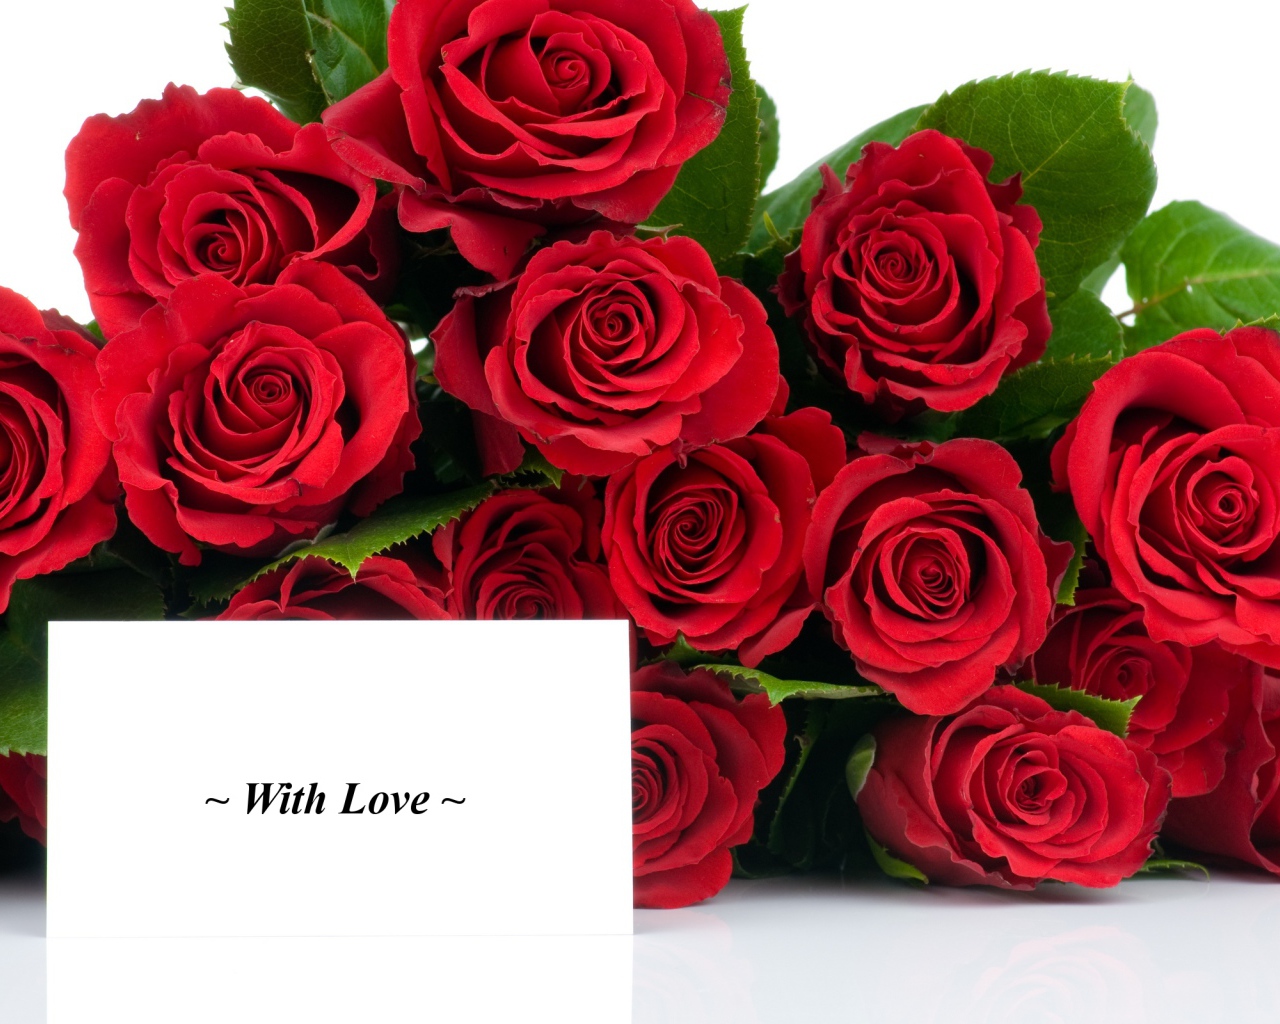 Красные розы на 8 марта с открыткой